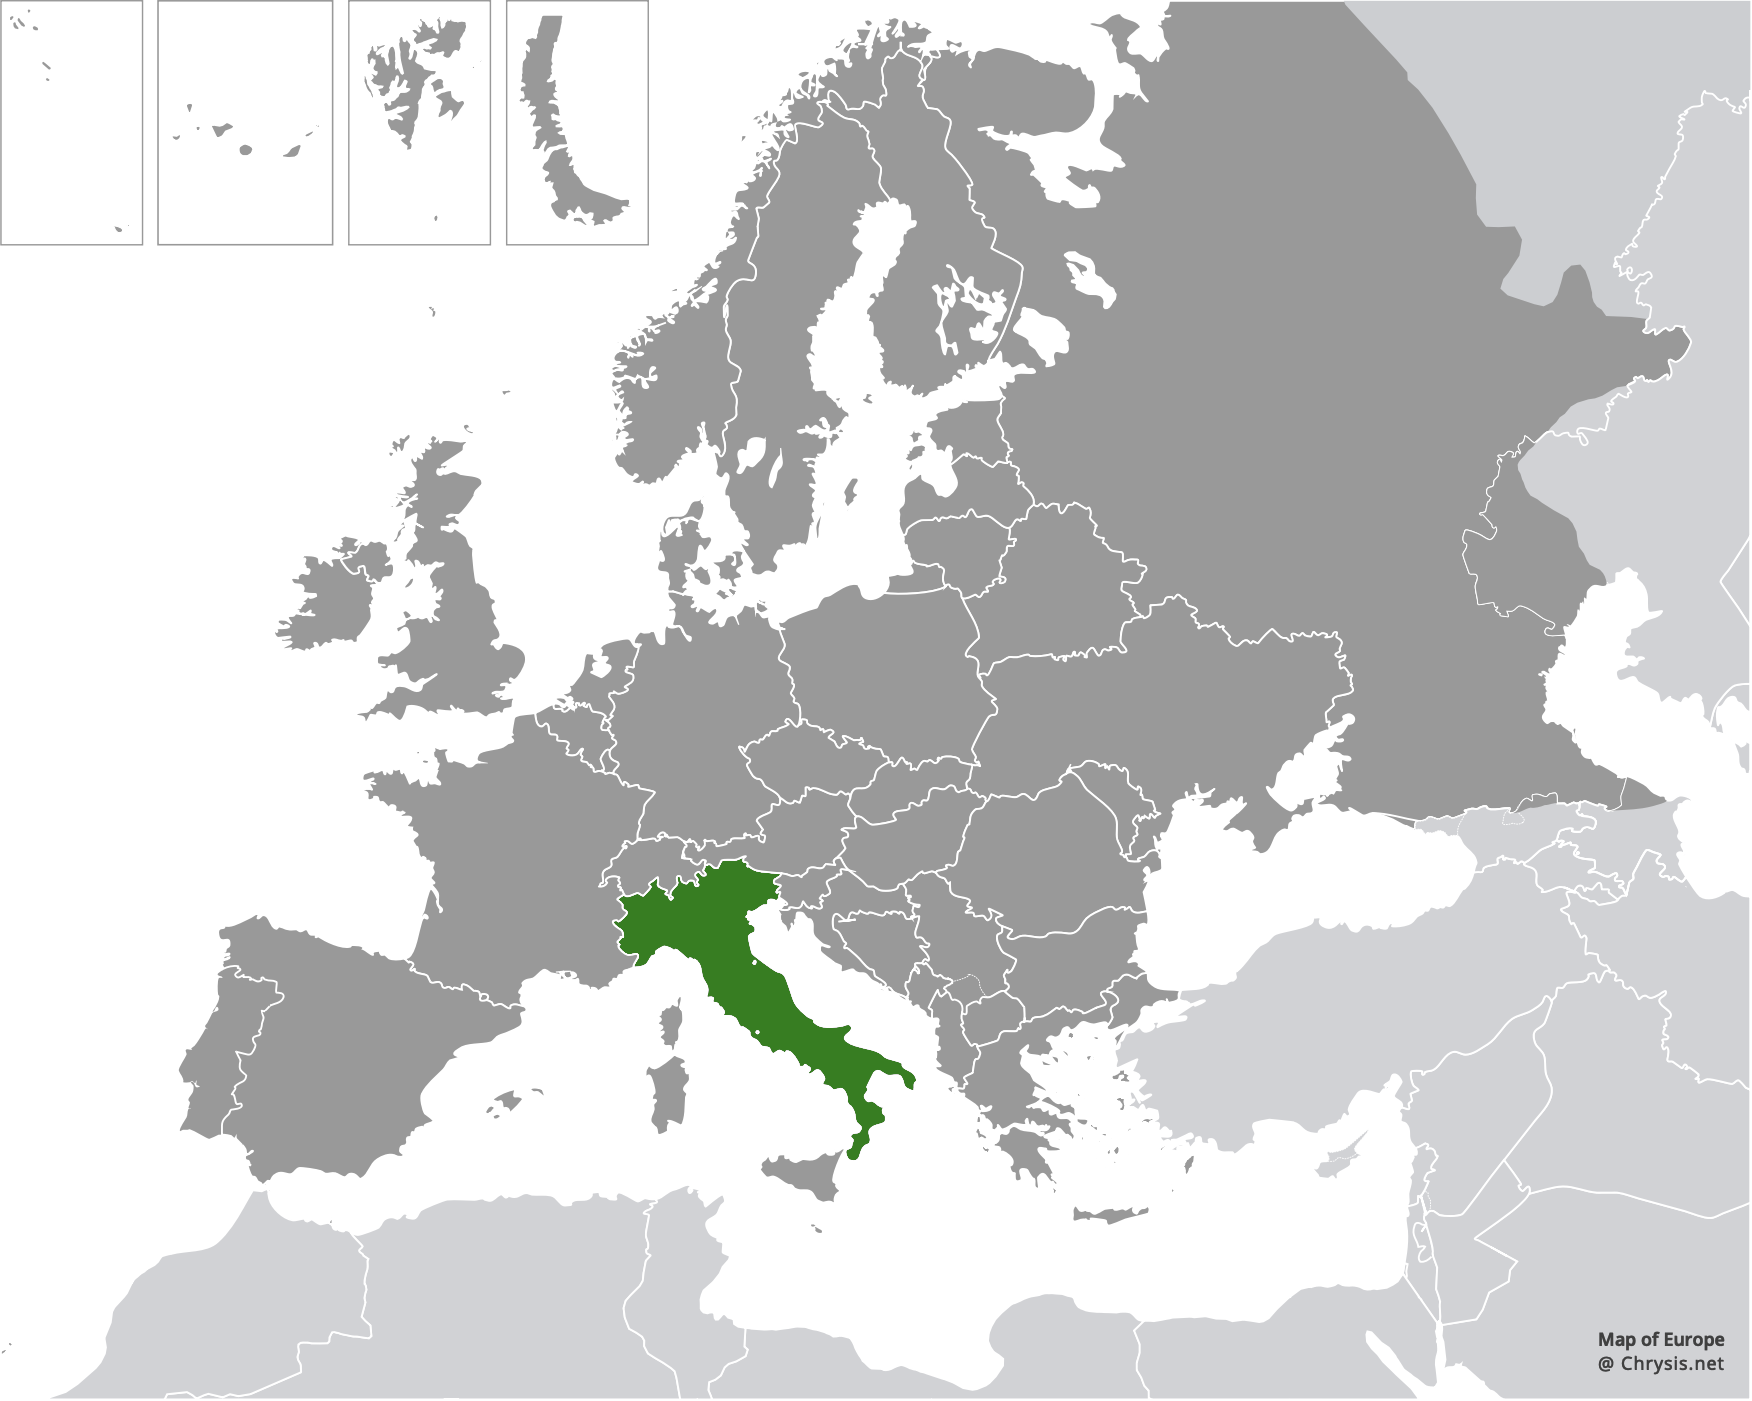 European distribution of Hedychridium etruscum Strumia, 2003